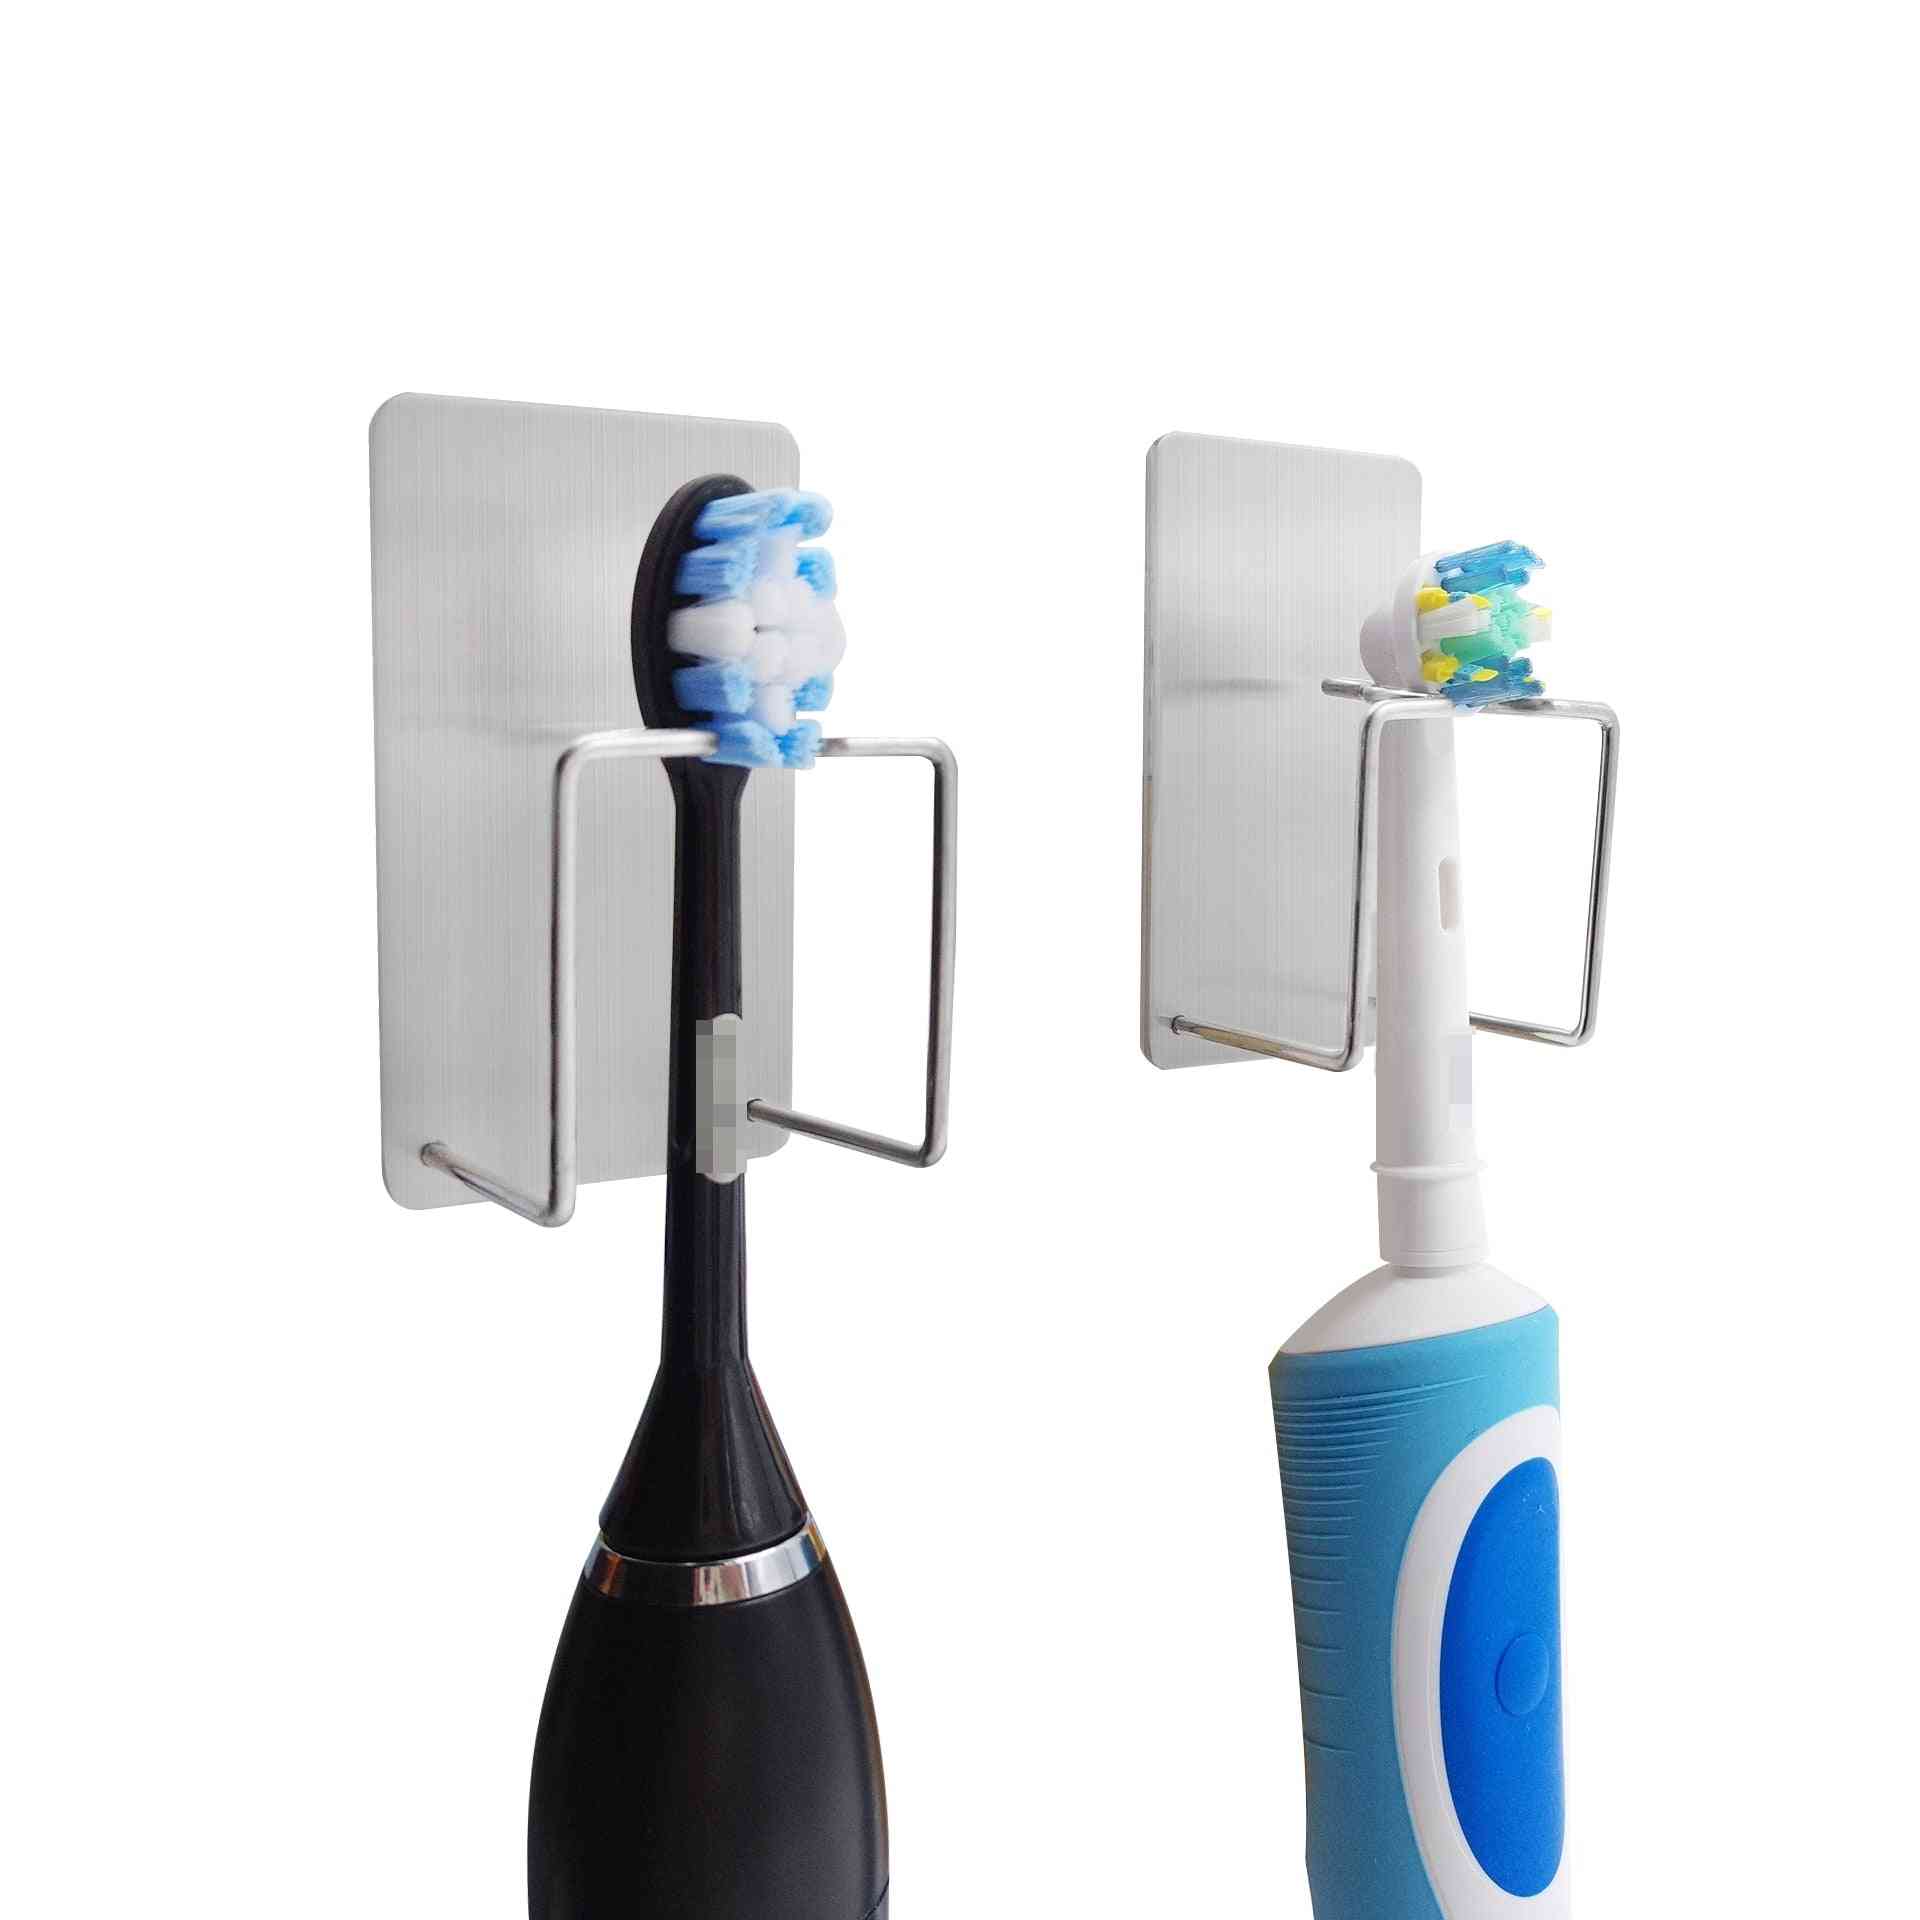 Samolepky na háčky pro skladování na stěnu se používají na zubní pasty, kartáčky na zuby, koupelnové doplňky.